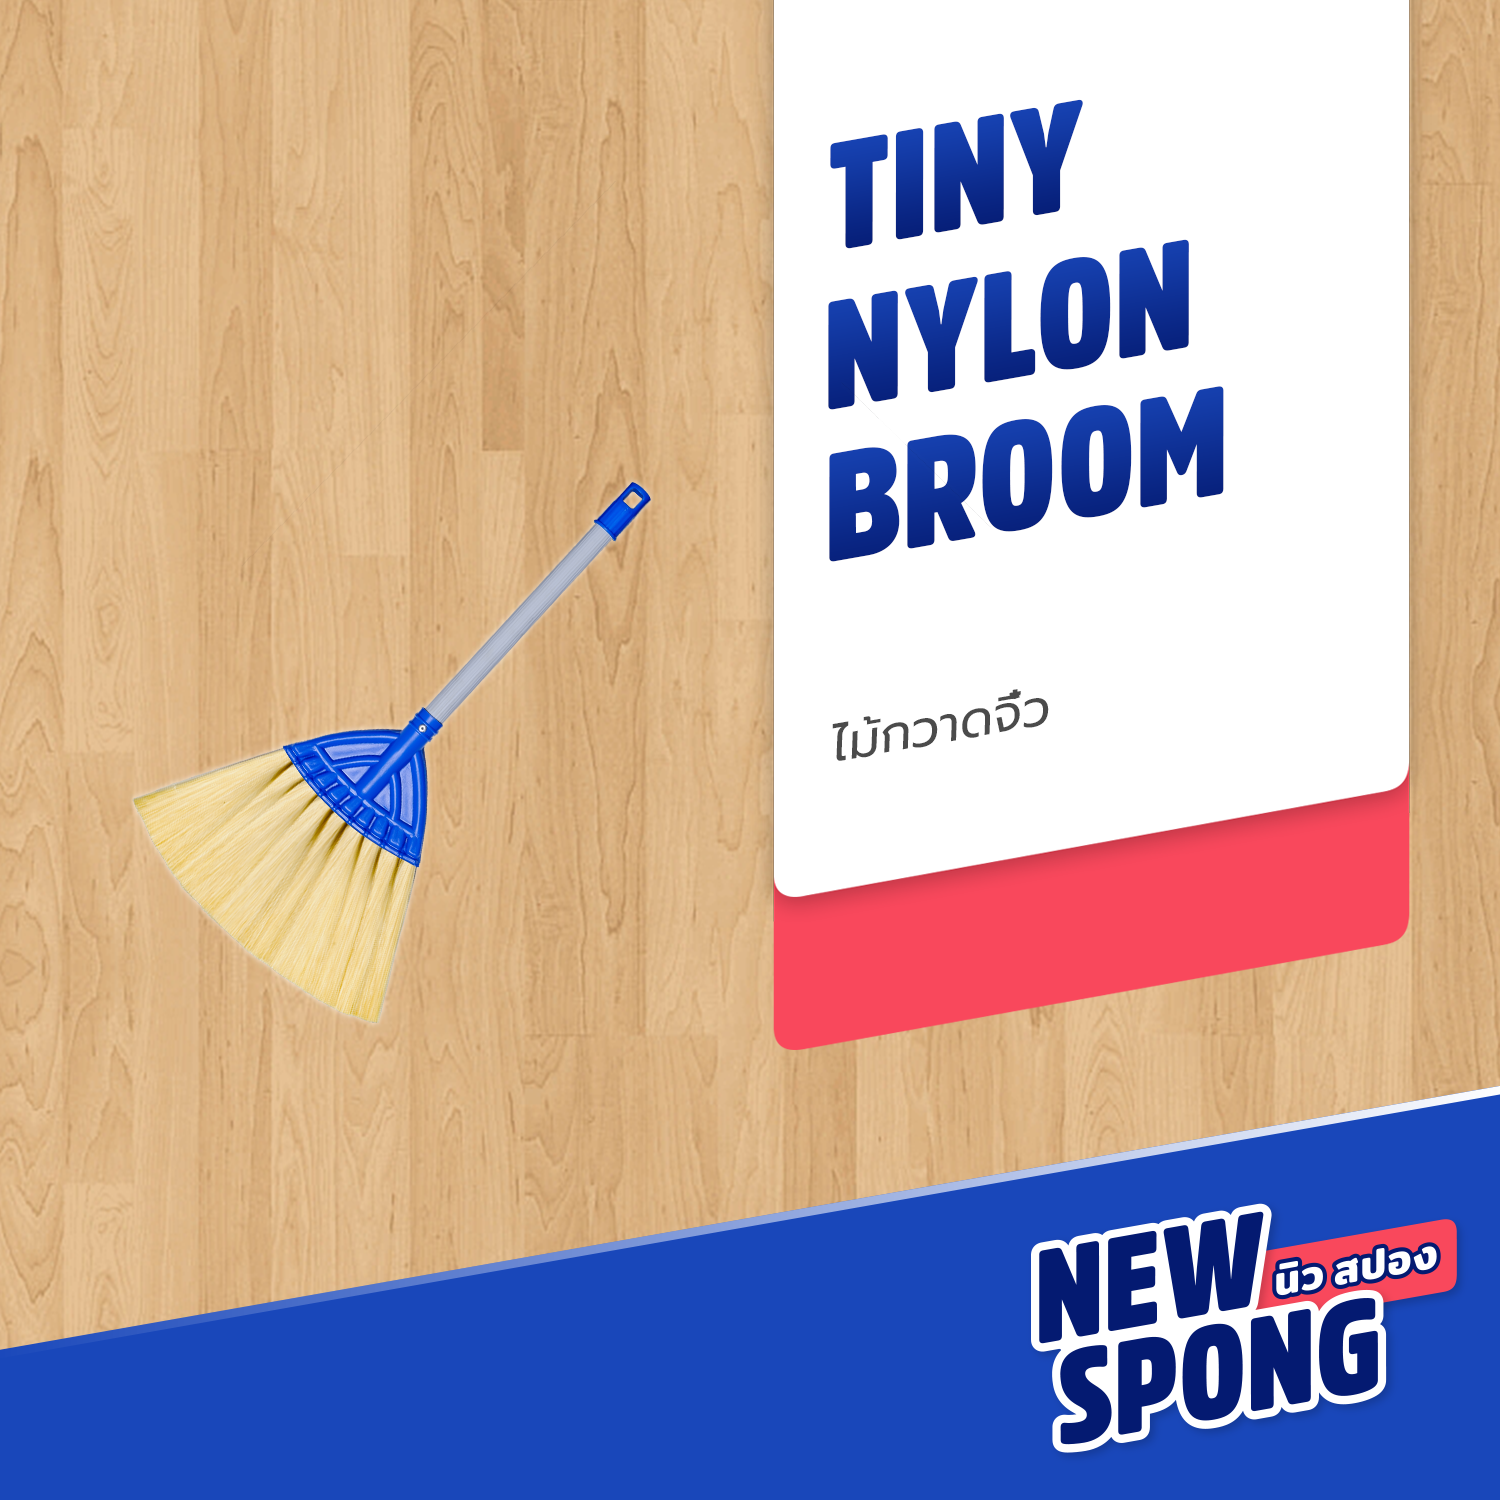 ไม้กวาดจิ๋ว New spong (นิว สปอง) (Small Nylon Broom)